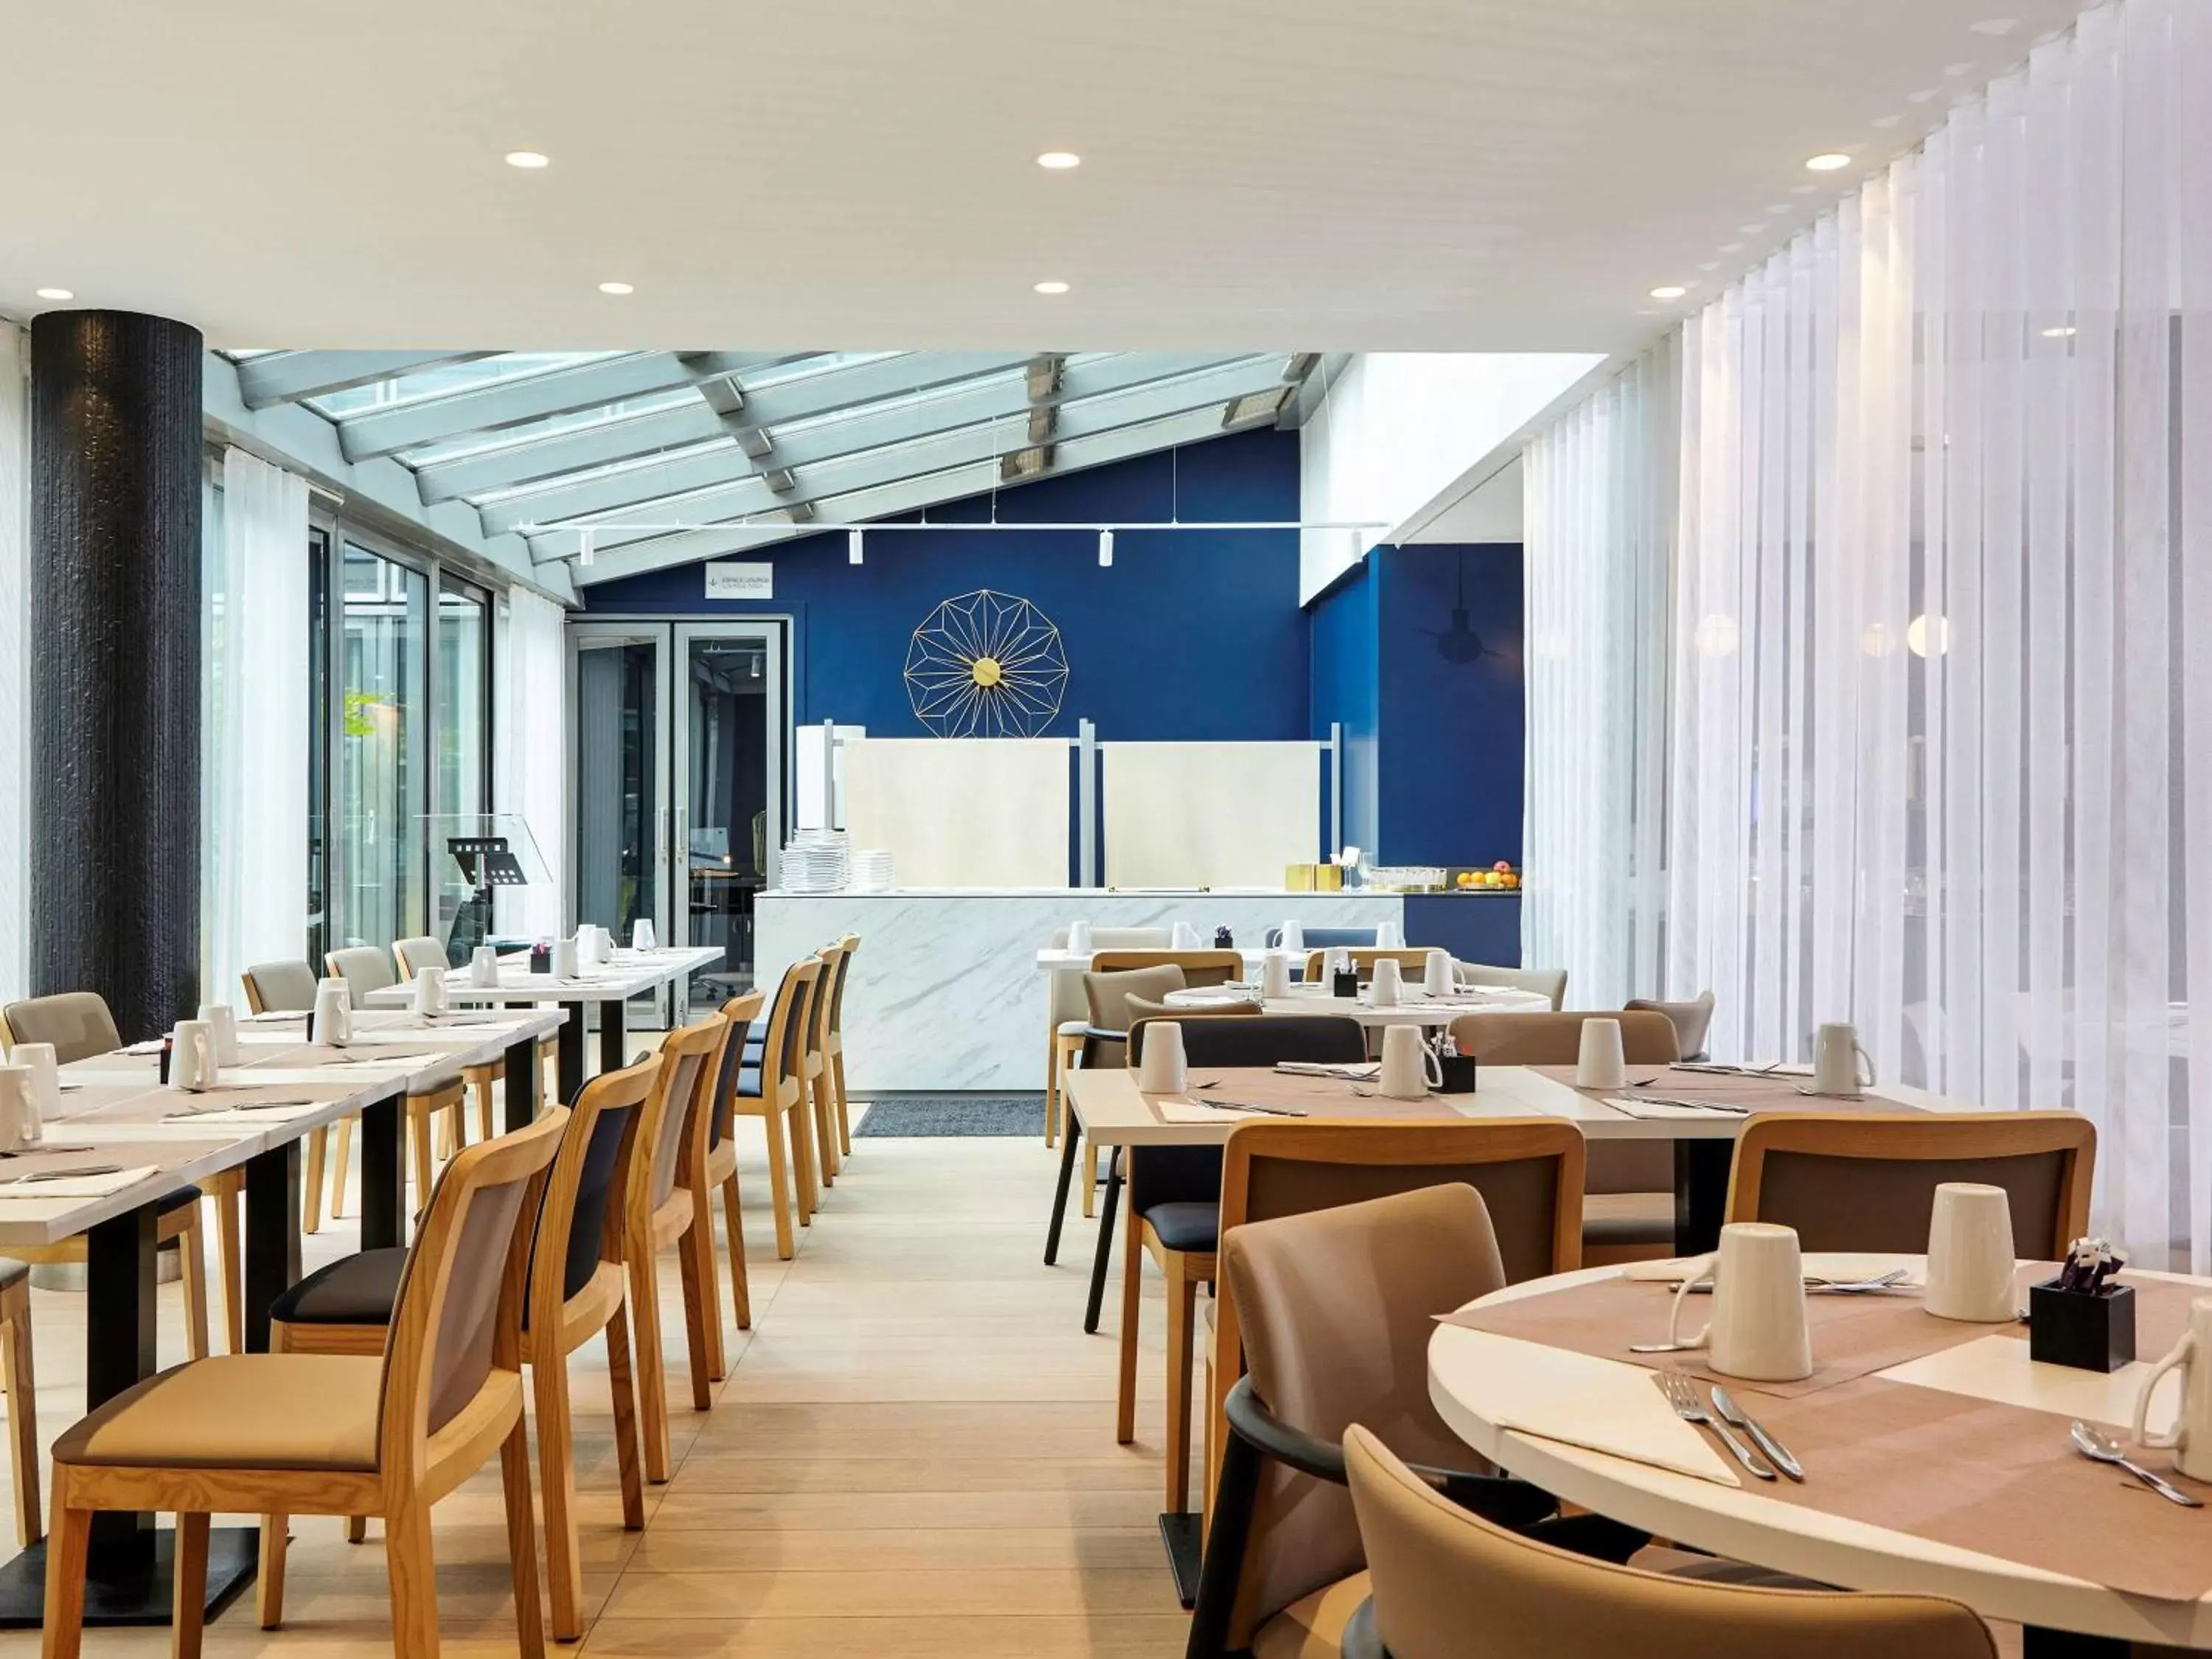 Property building, Restaurant/Places to Eat in Mercure Paris La Défense Grande Arche Hotel